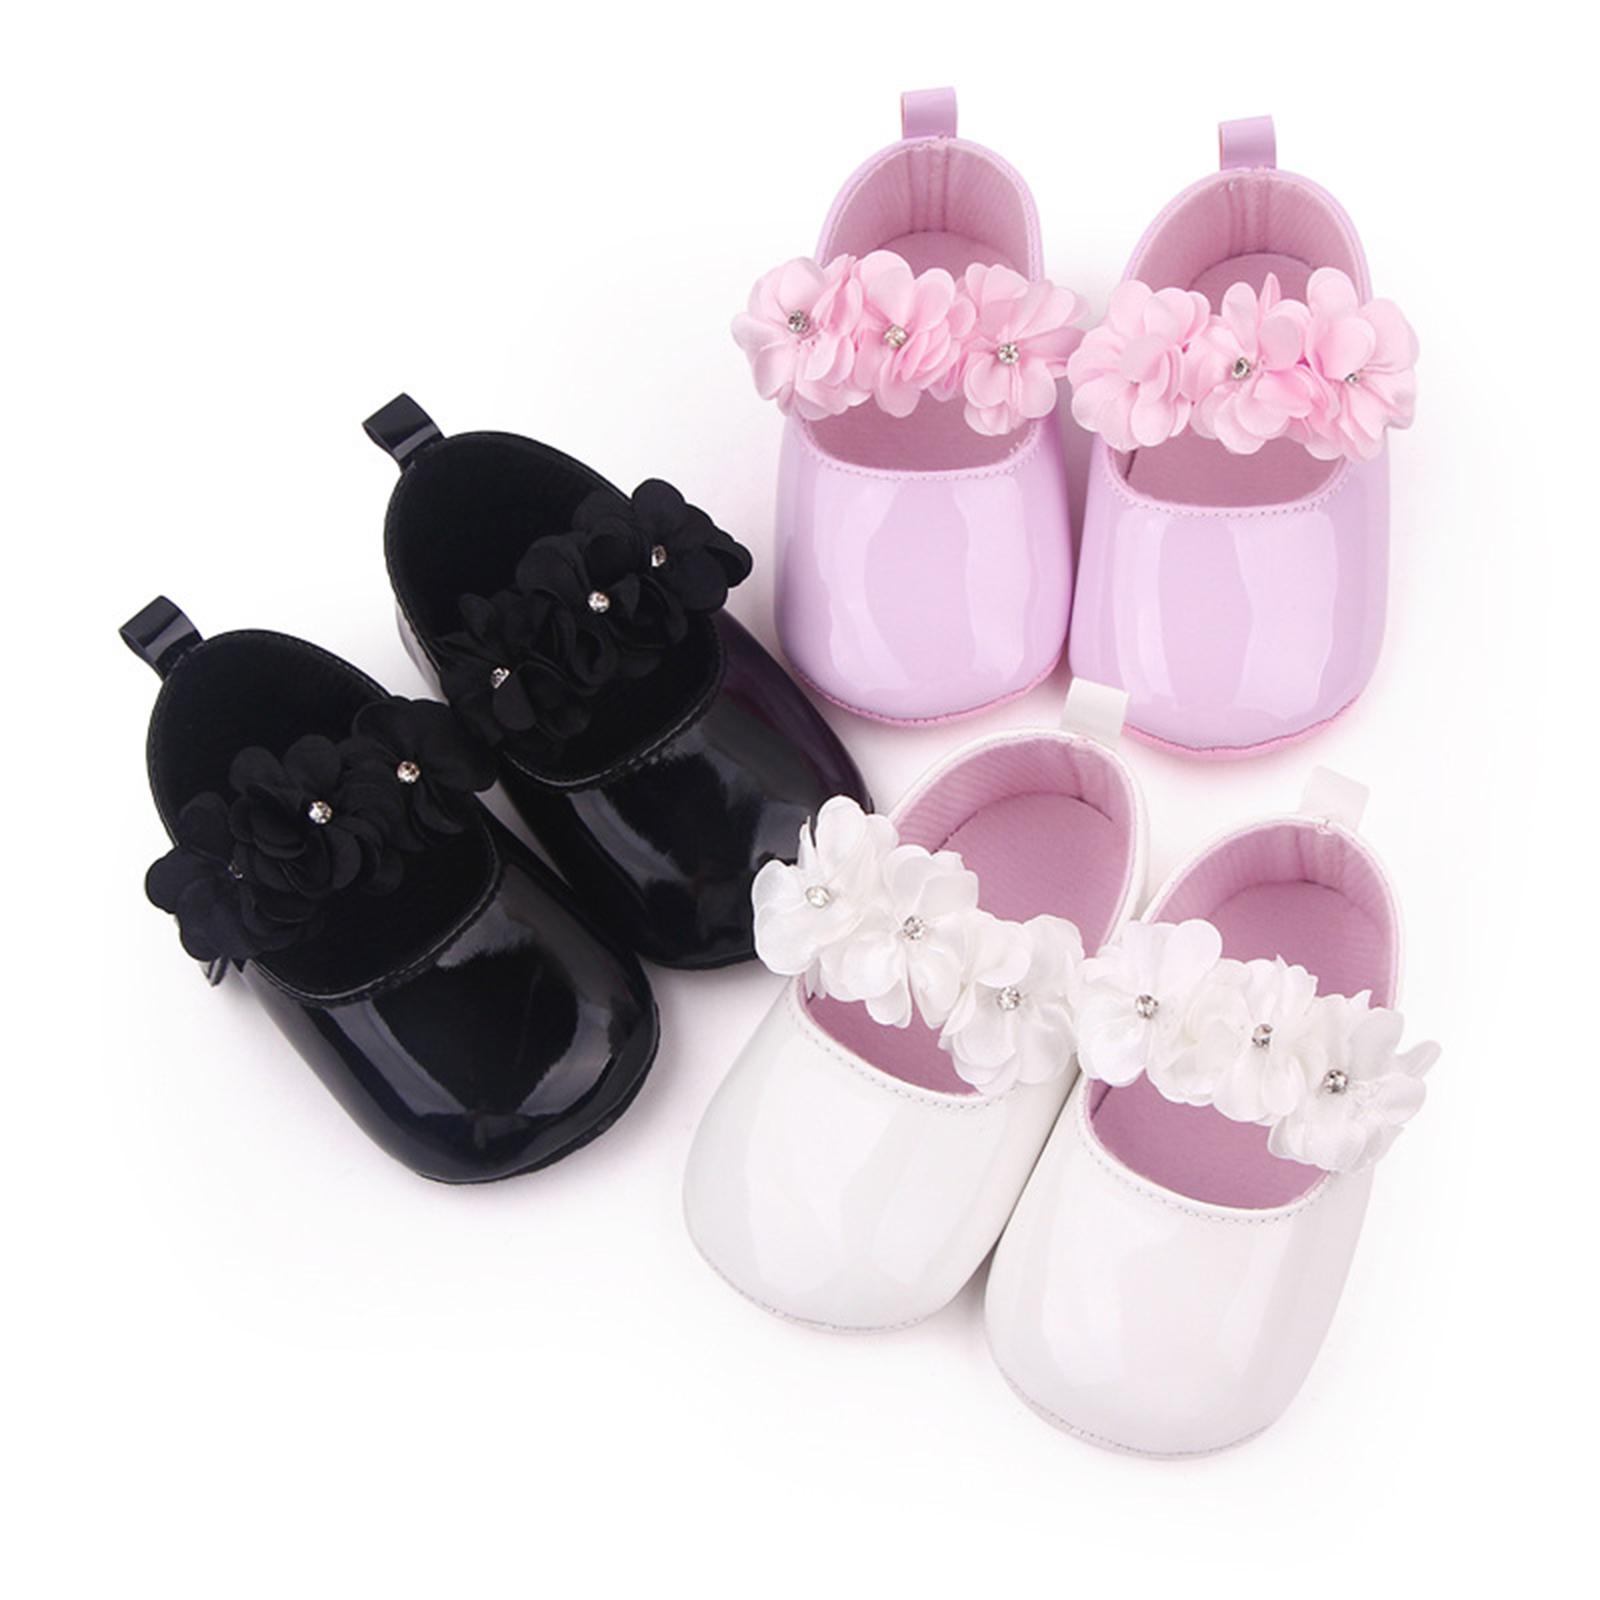 Tres pares de mocasines con flores sobre fondo blanco, en negro, rosa y blanco